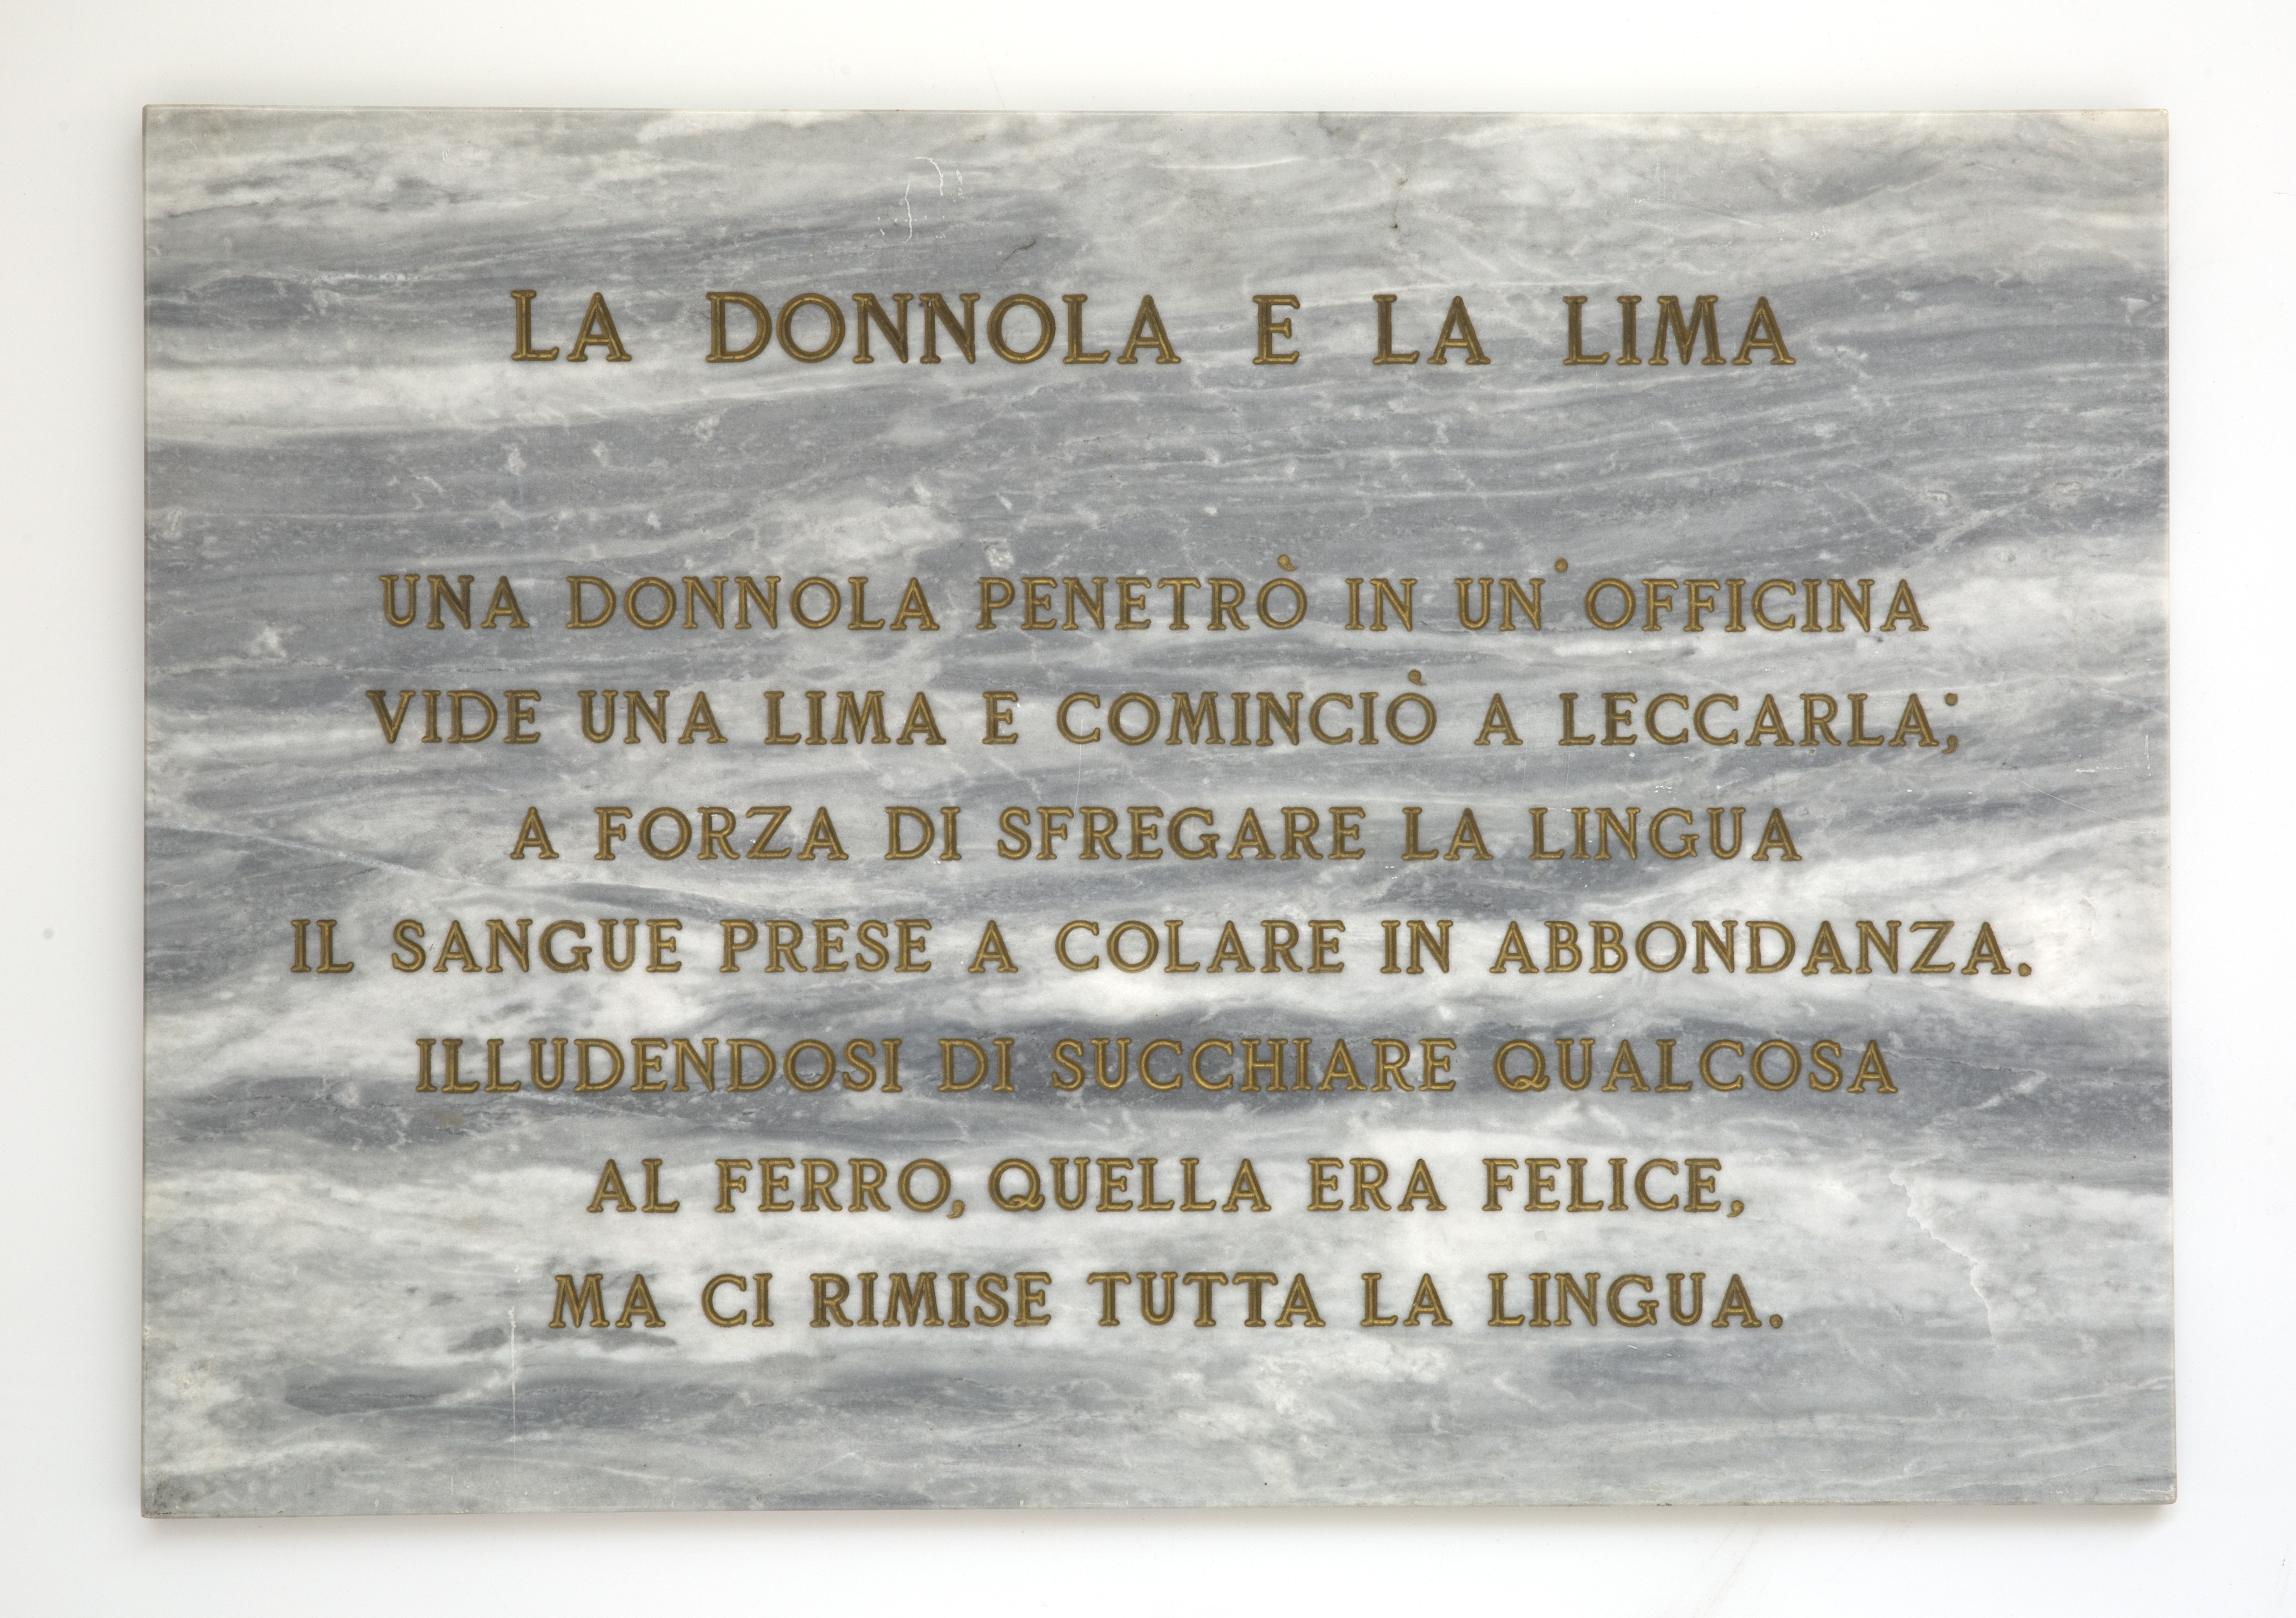  Salvo, La donnola e la lima, 1972, lapide in marmo, 45x65 cm